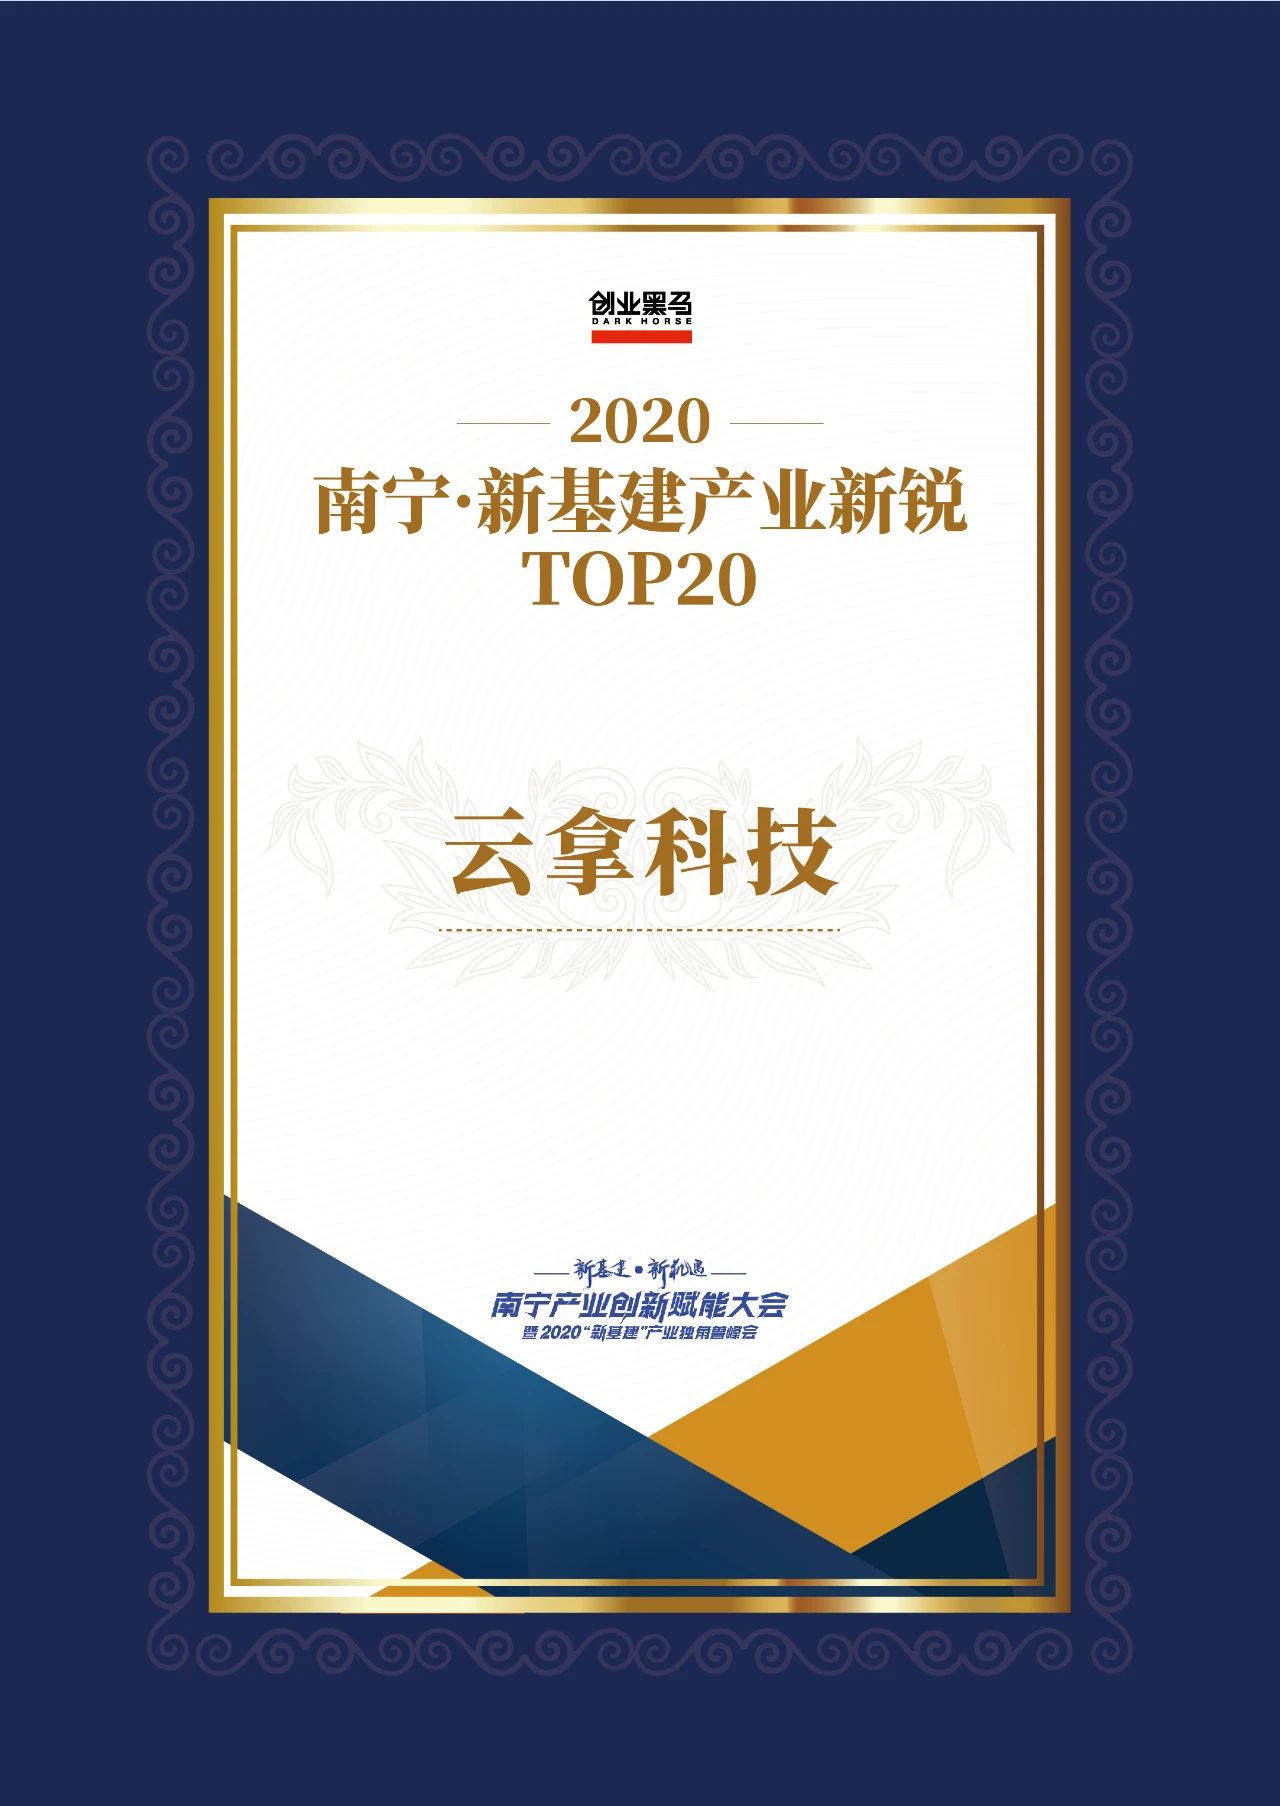 云拿科技入选2020南宁•新基建产业新锐TOP20